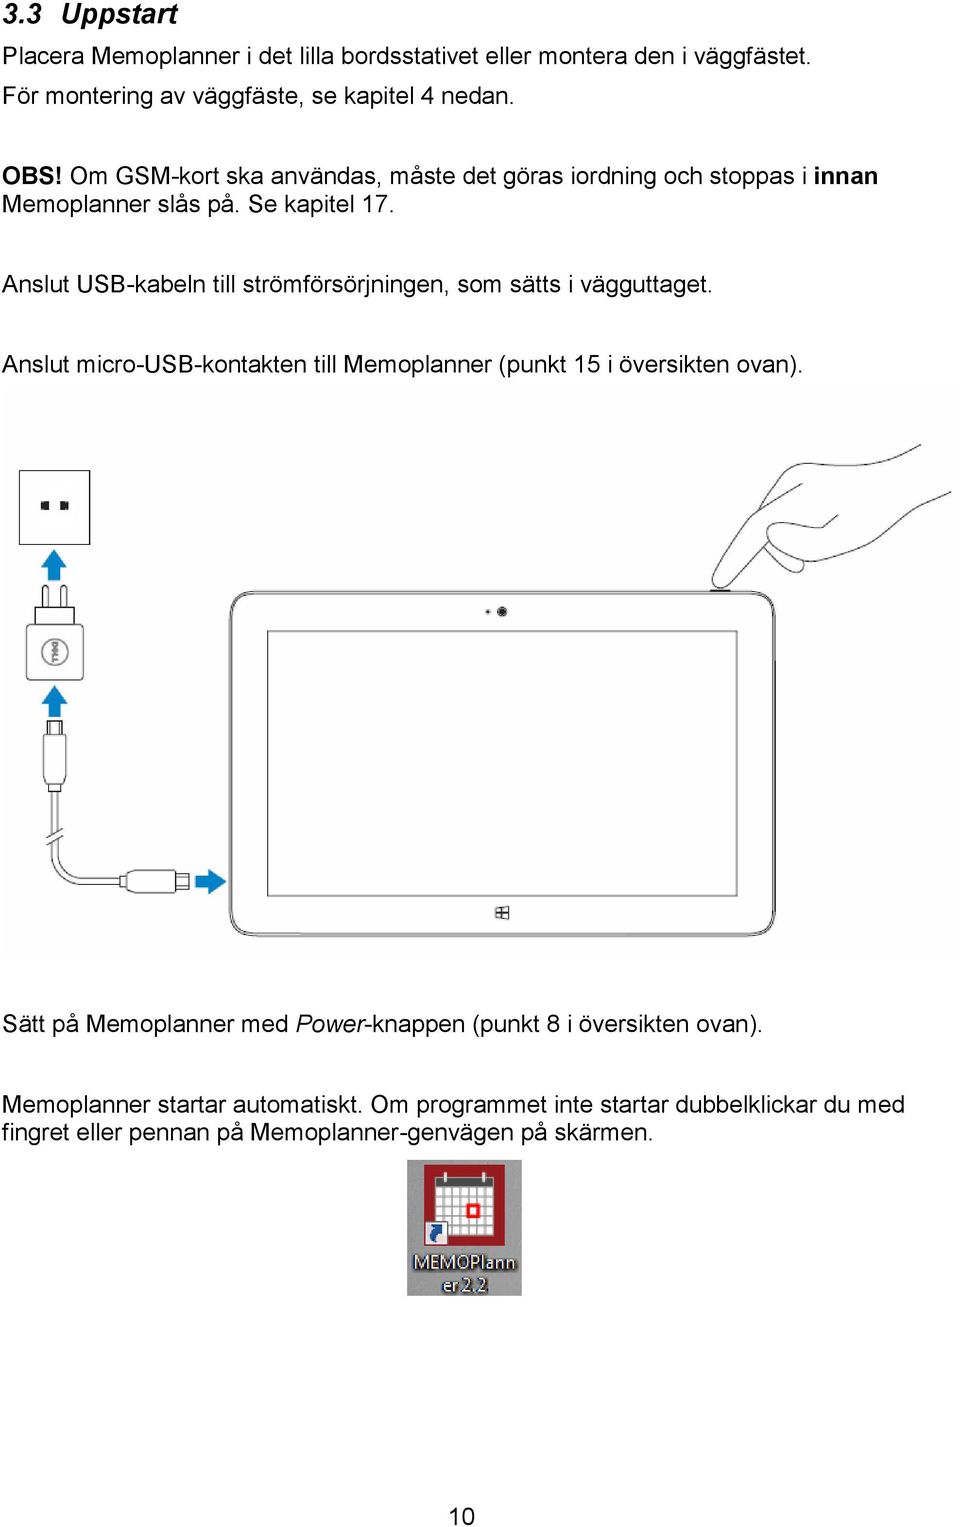 Anslut USB-kabeln till strömförsörjningen, som sätts i vägguttaget. Anslut micro-usb-kontakten till Memoplanner (punkt 15 i översikten ovan).